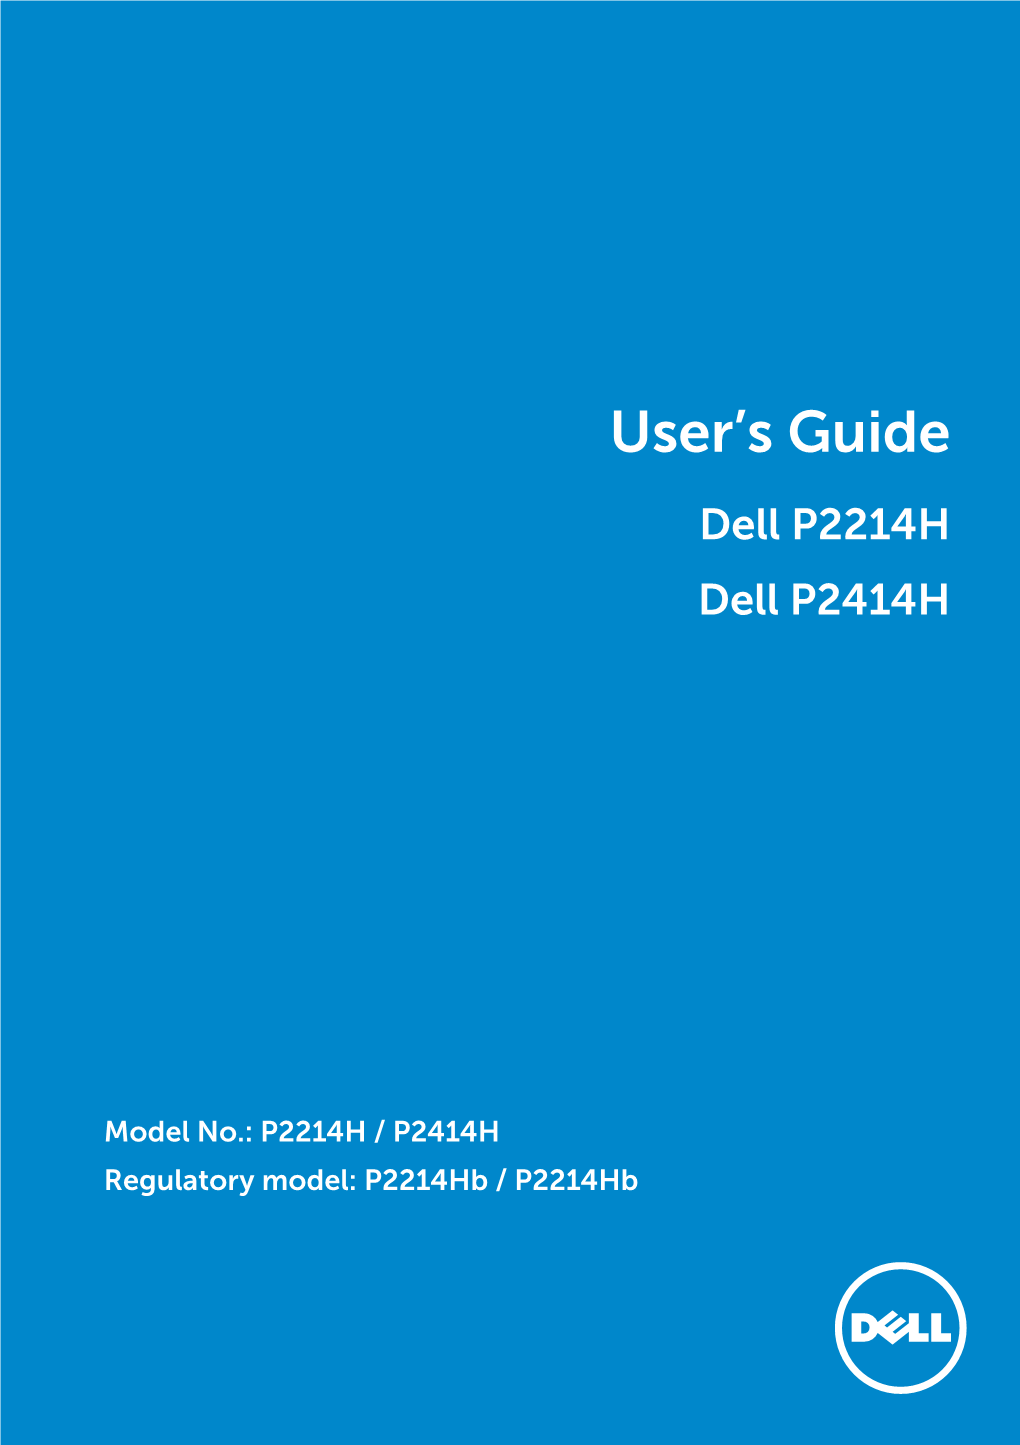 User's Guide Dell P2214H / Dell P2414H